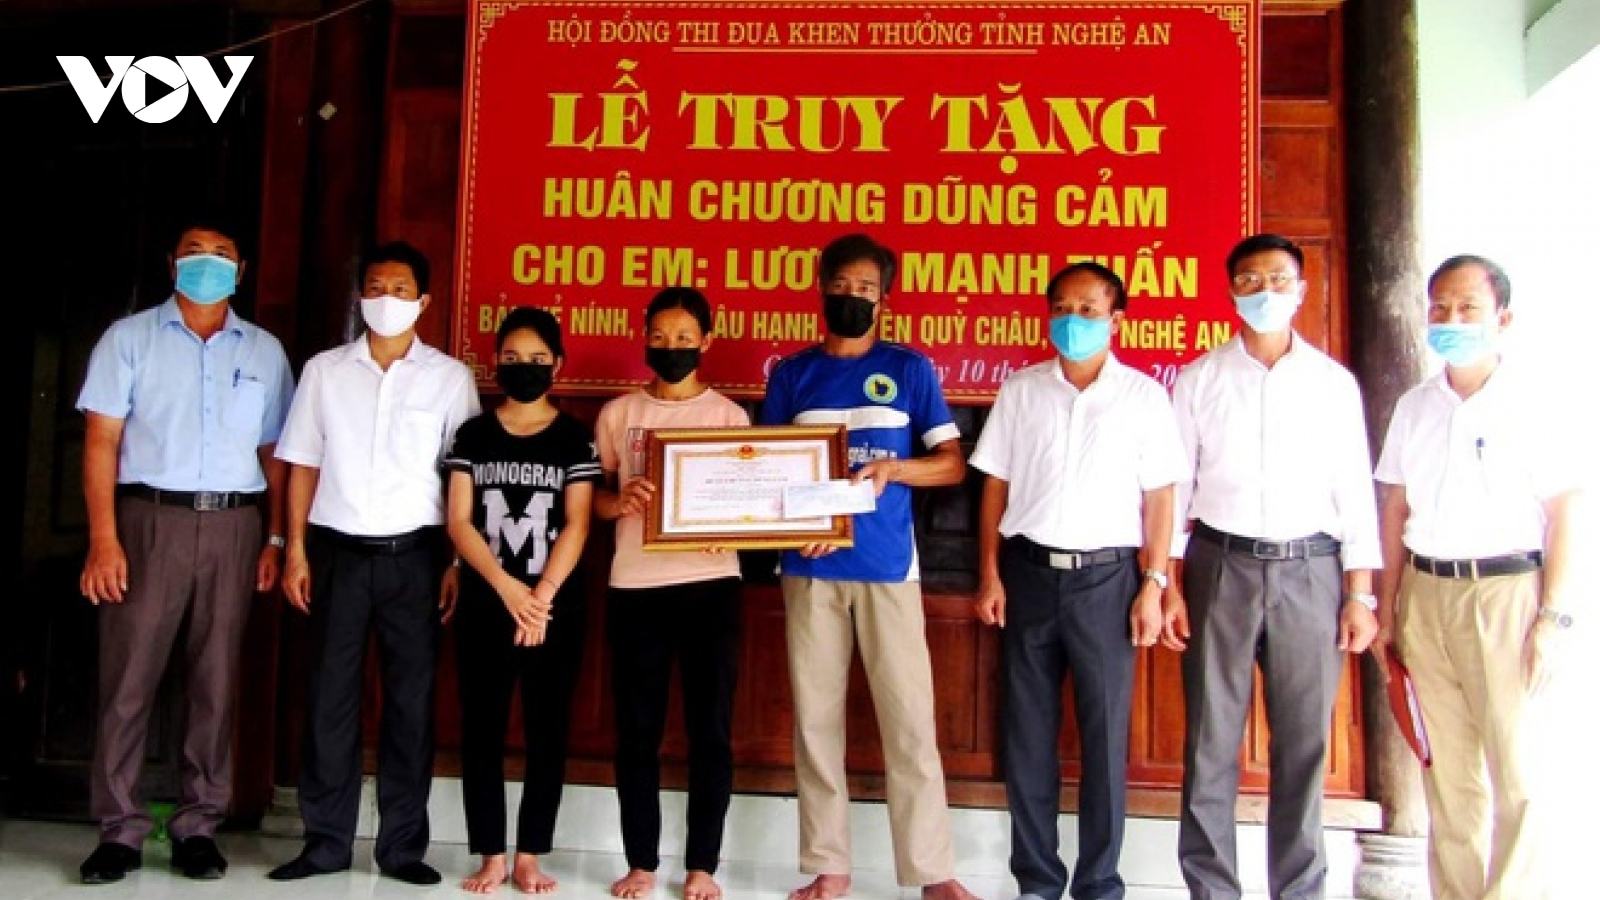 Truy tặng Huân chương dũng cảm cho nam sinh ở Nghệ An quên mình cứu 2 em nhỏ